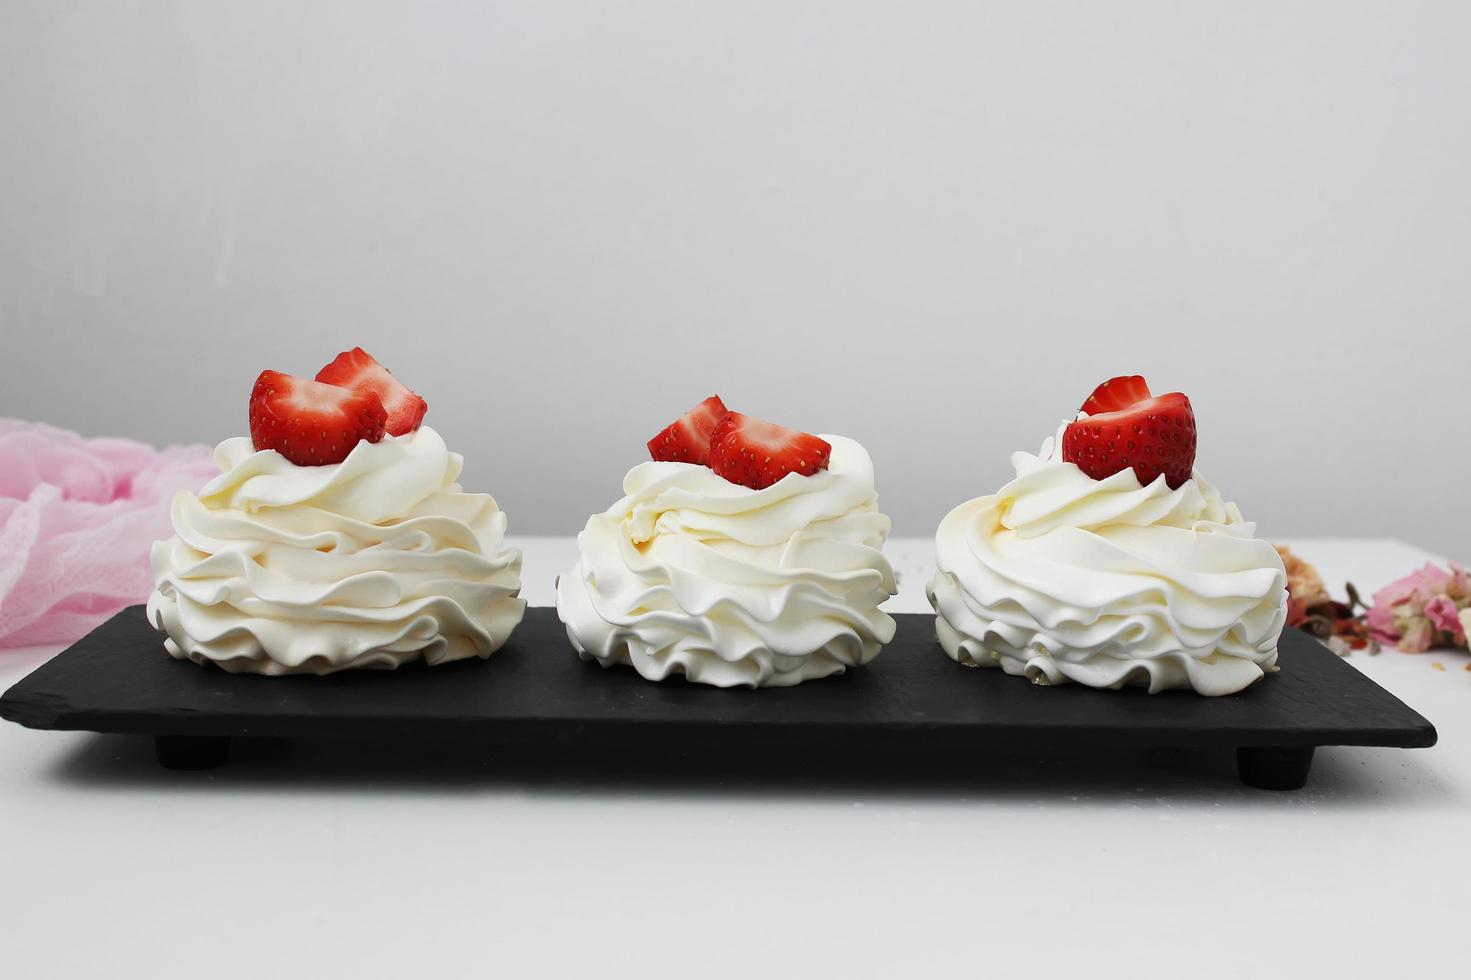 cupcakes con crema blanca y fresas en un plato negro. foto horizontal.